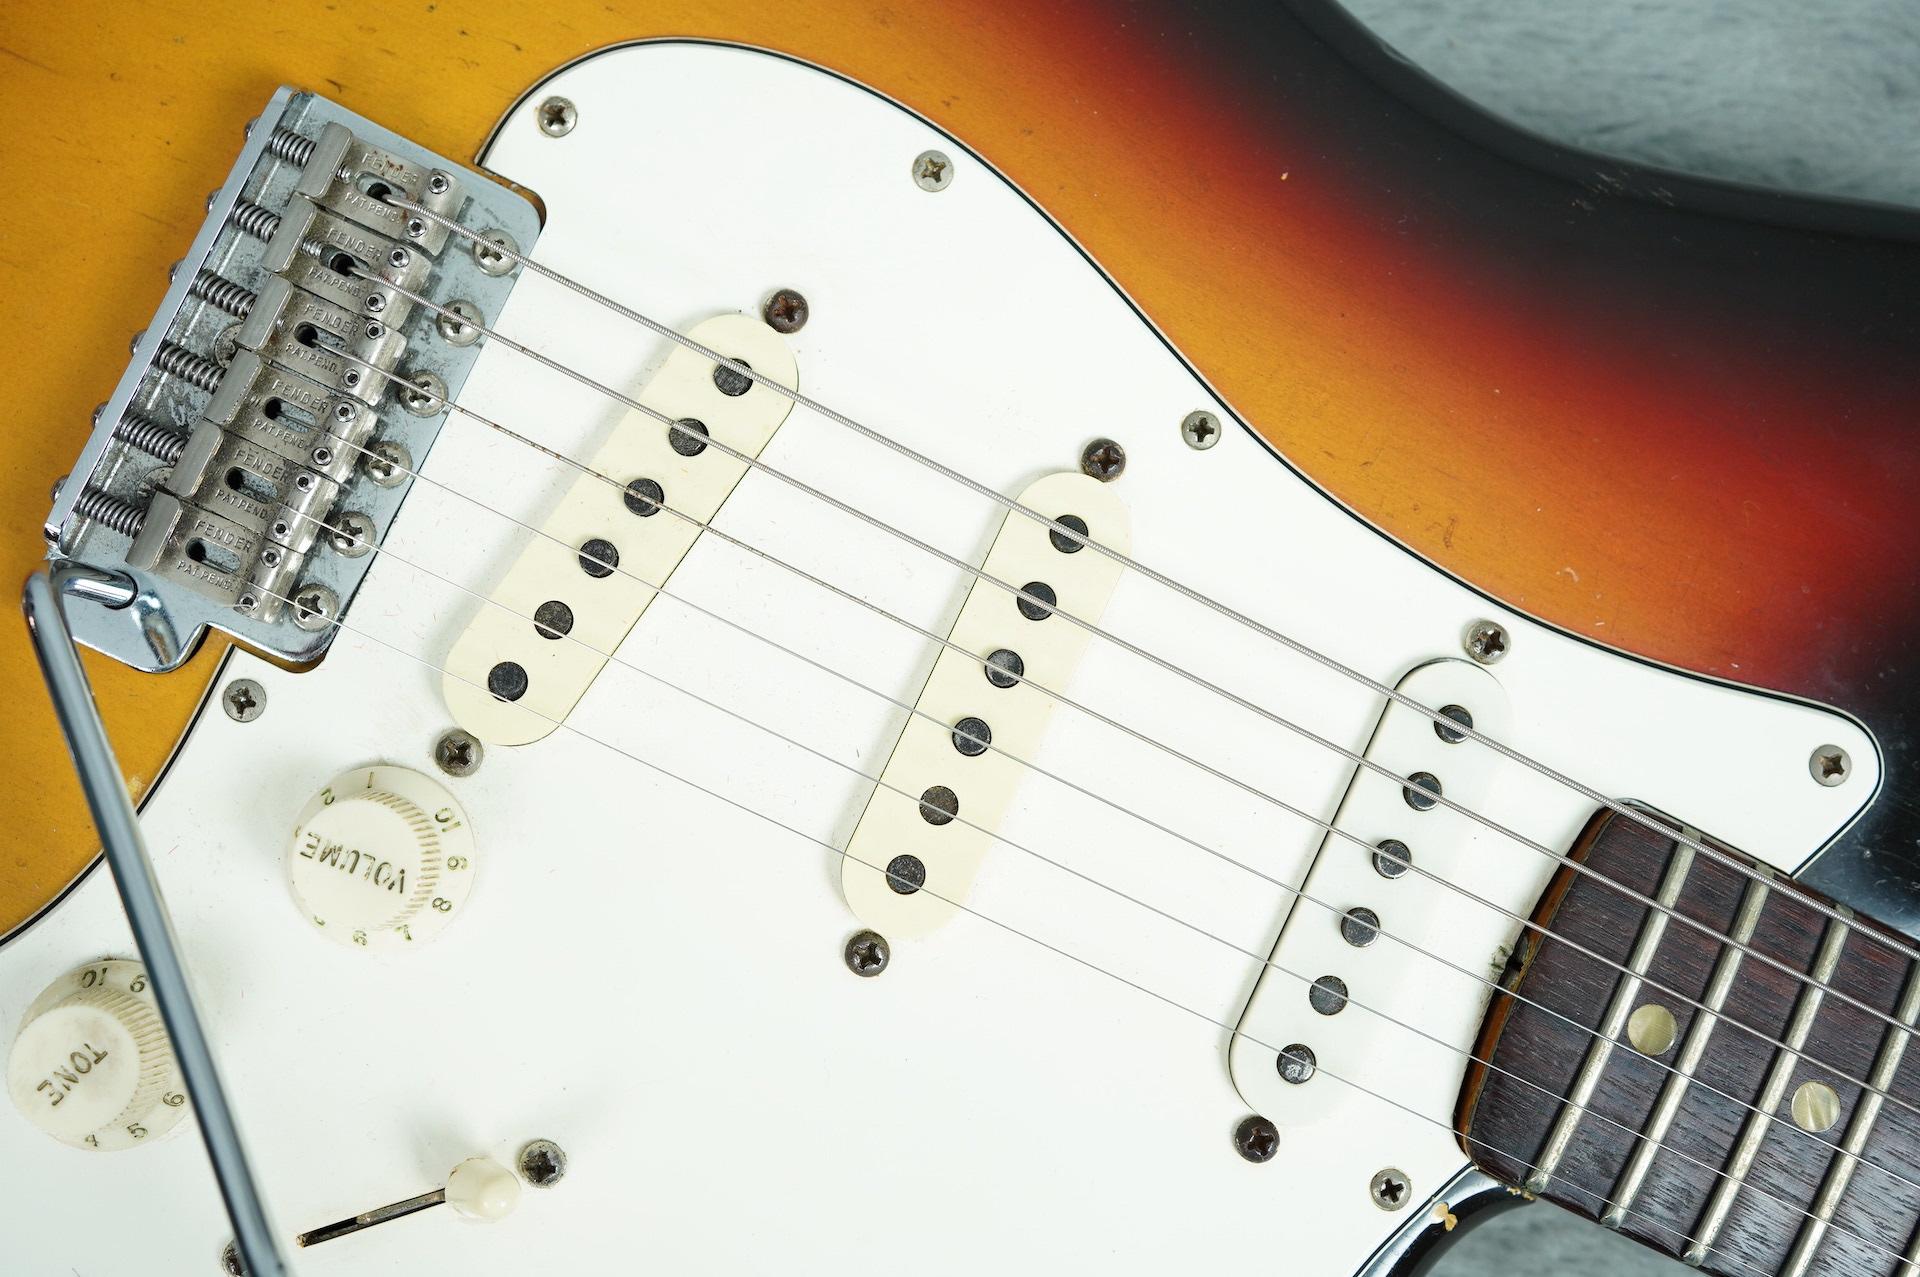 1966 Fender Stratocaster